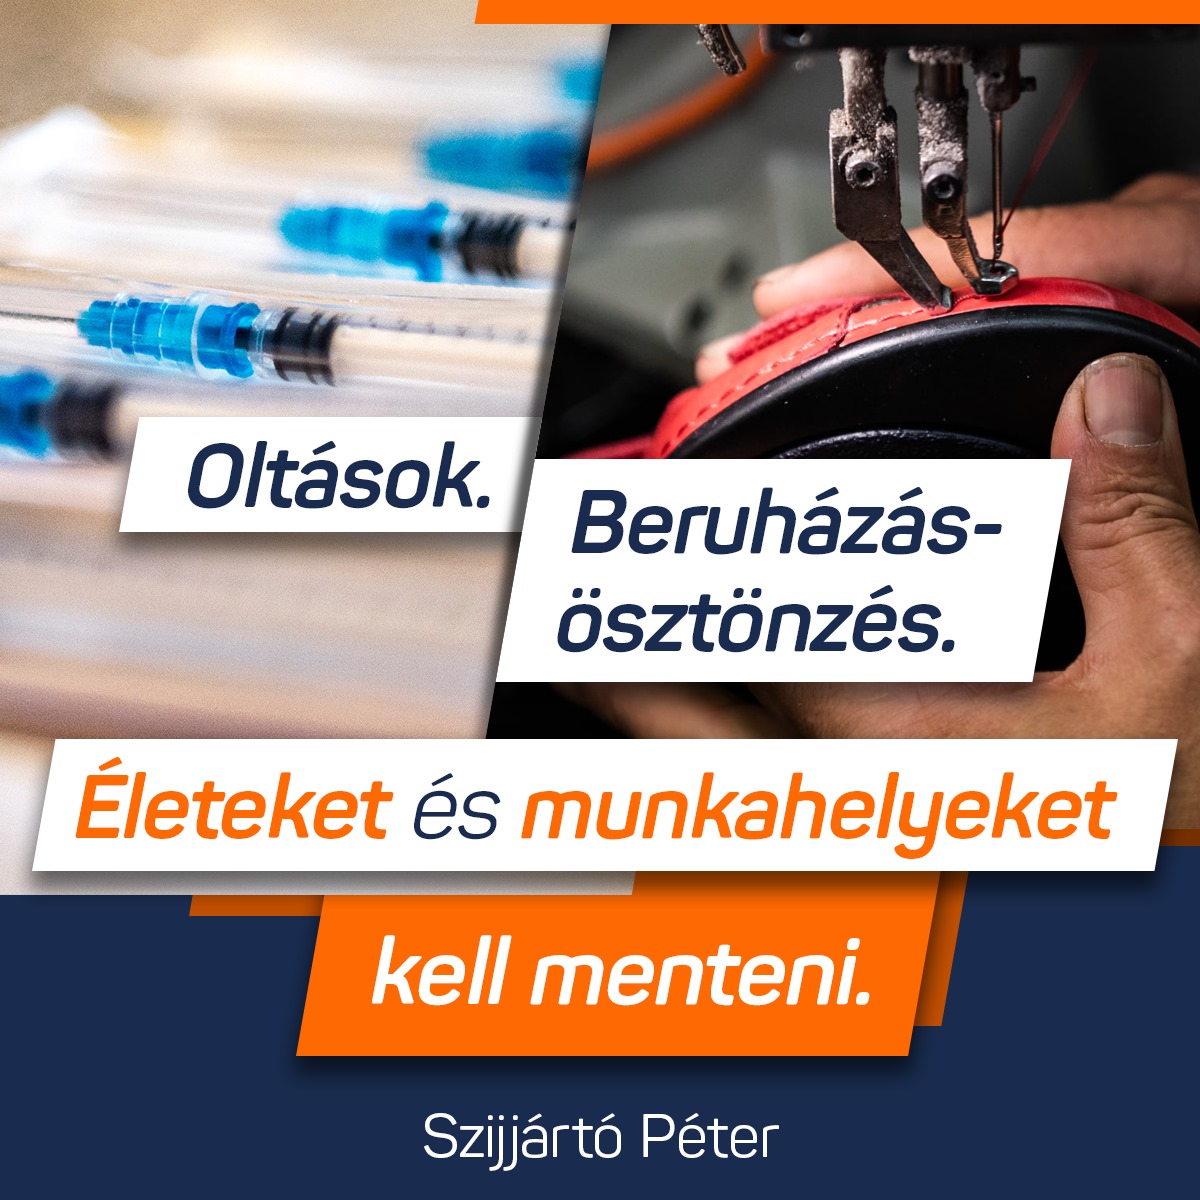 Szijjártó Péter – Az oltásokkal az életeket, a beruházásokkal a munkahelyeket kell megmenteni.